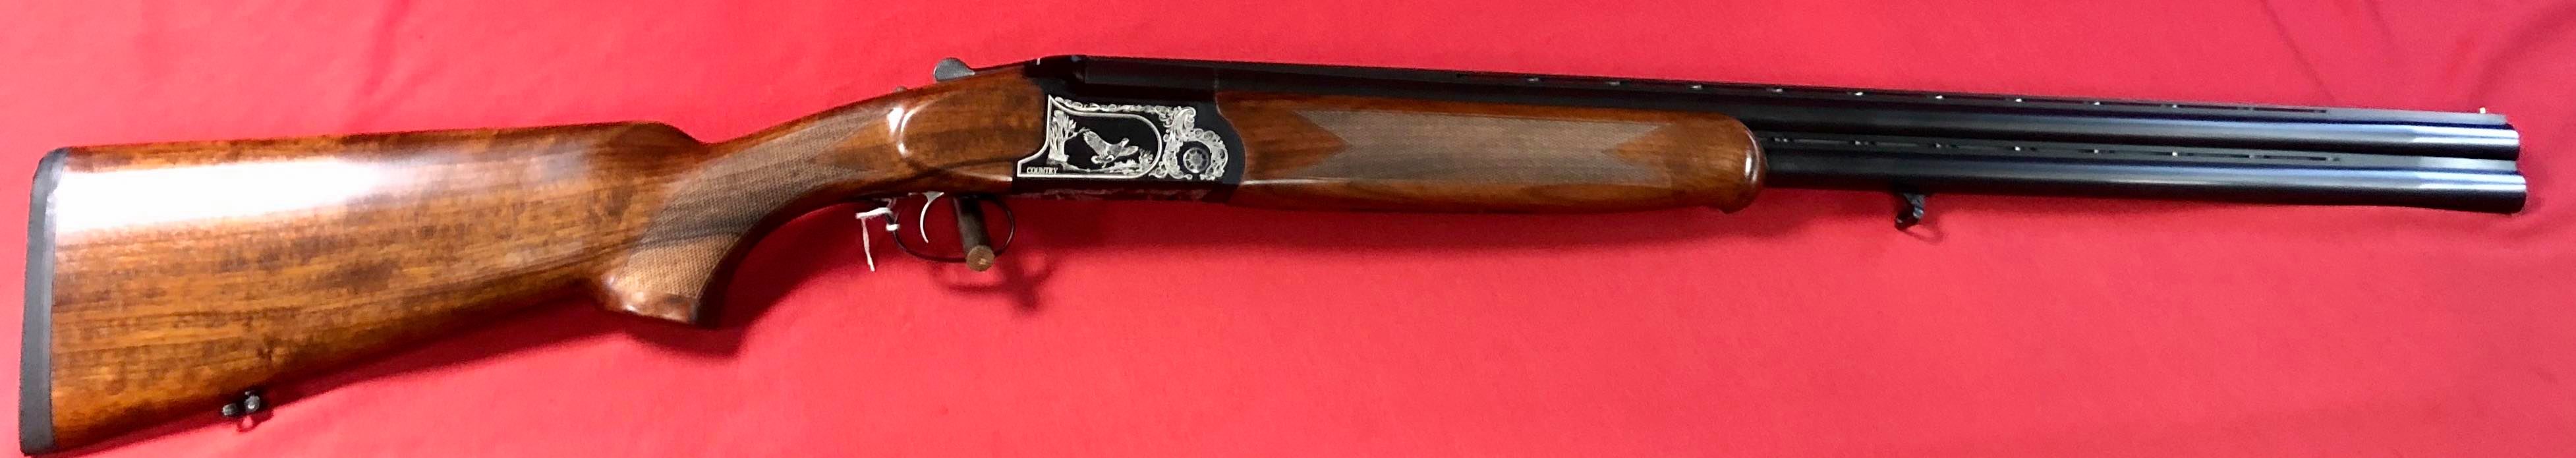 Fusil Contry en calibre 12/76 avec chock interchangeables.

580 euro